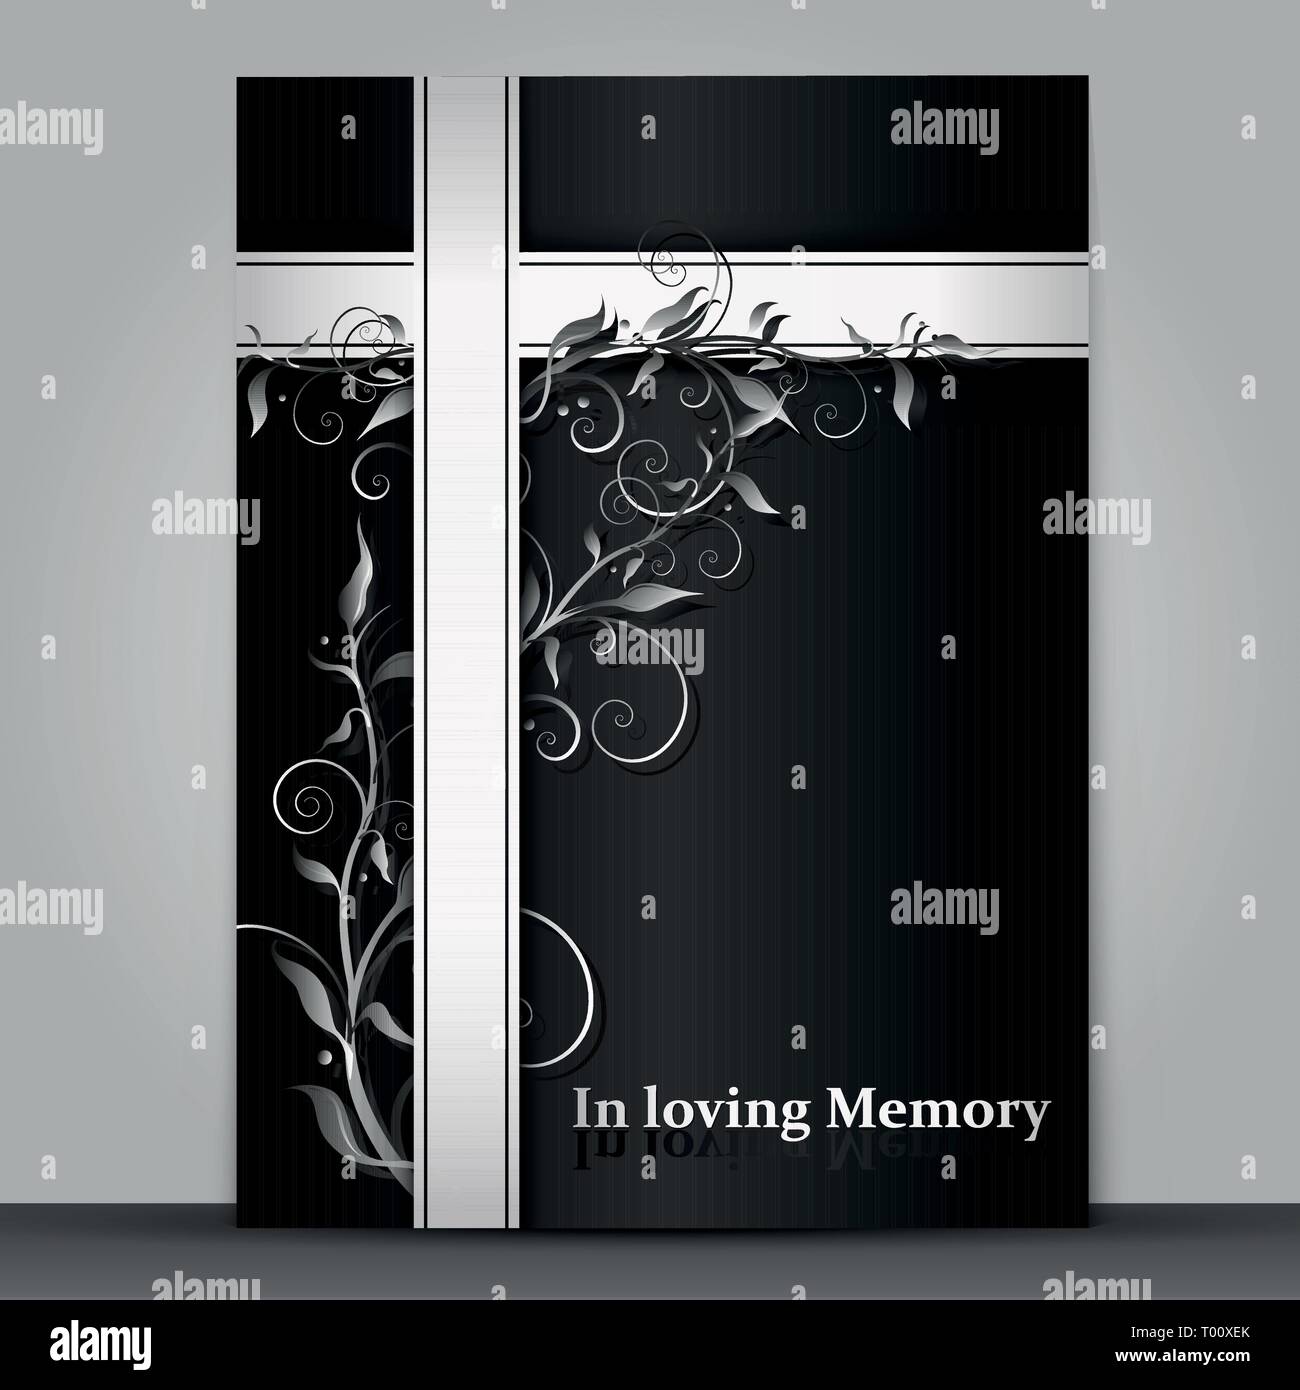 Dunkle Trauer Karte mit 3d-floralen ornament Wirkung auf grauem Hintergrund Stock Vektor